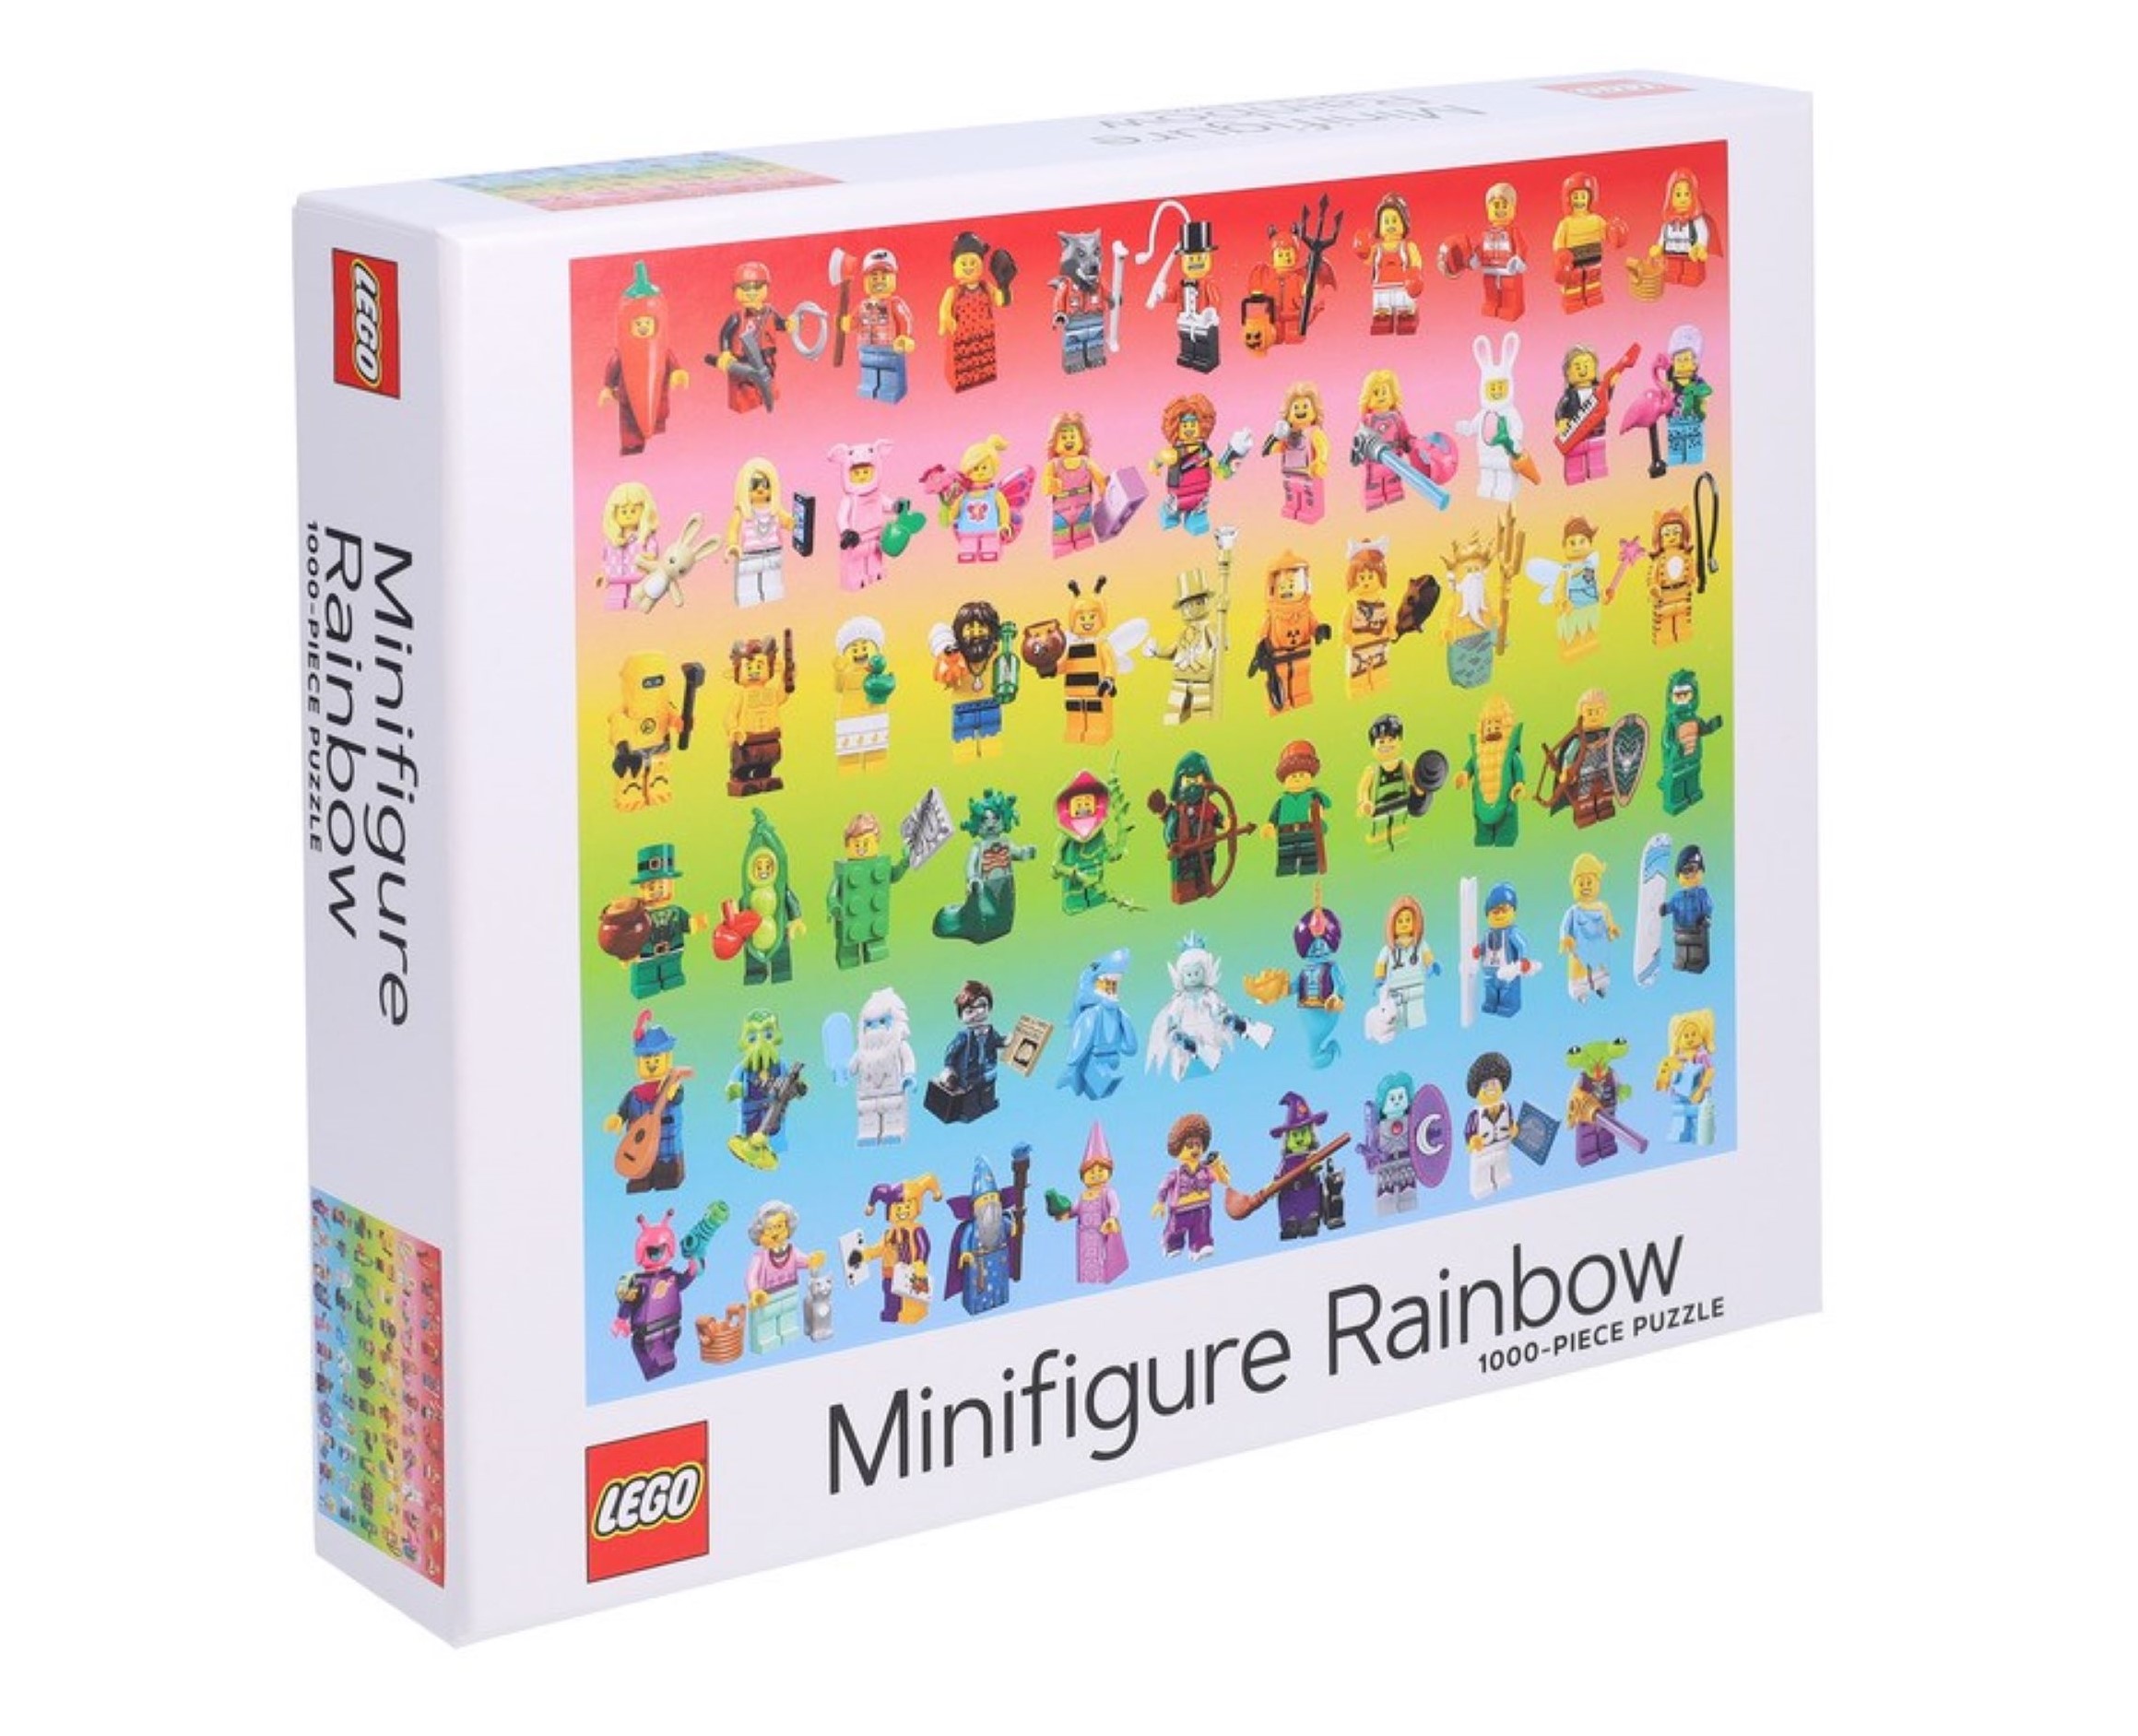 LEGO kisgyerek fiú lasszóval minifigura